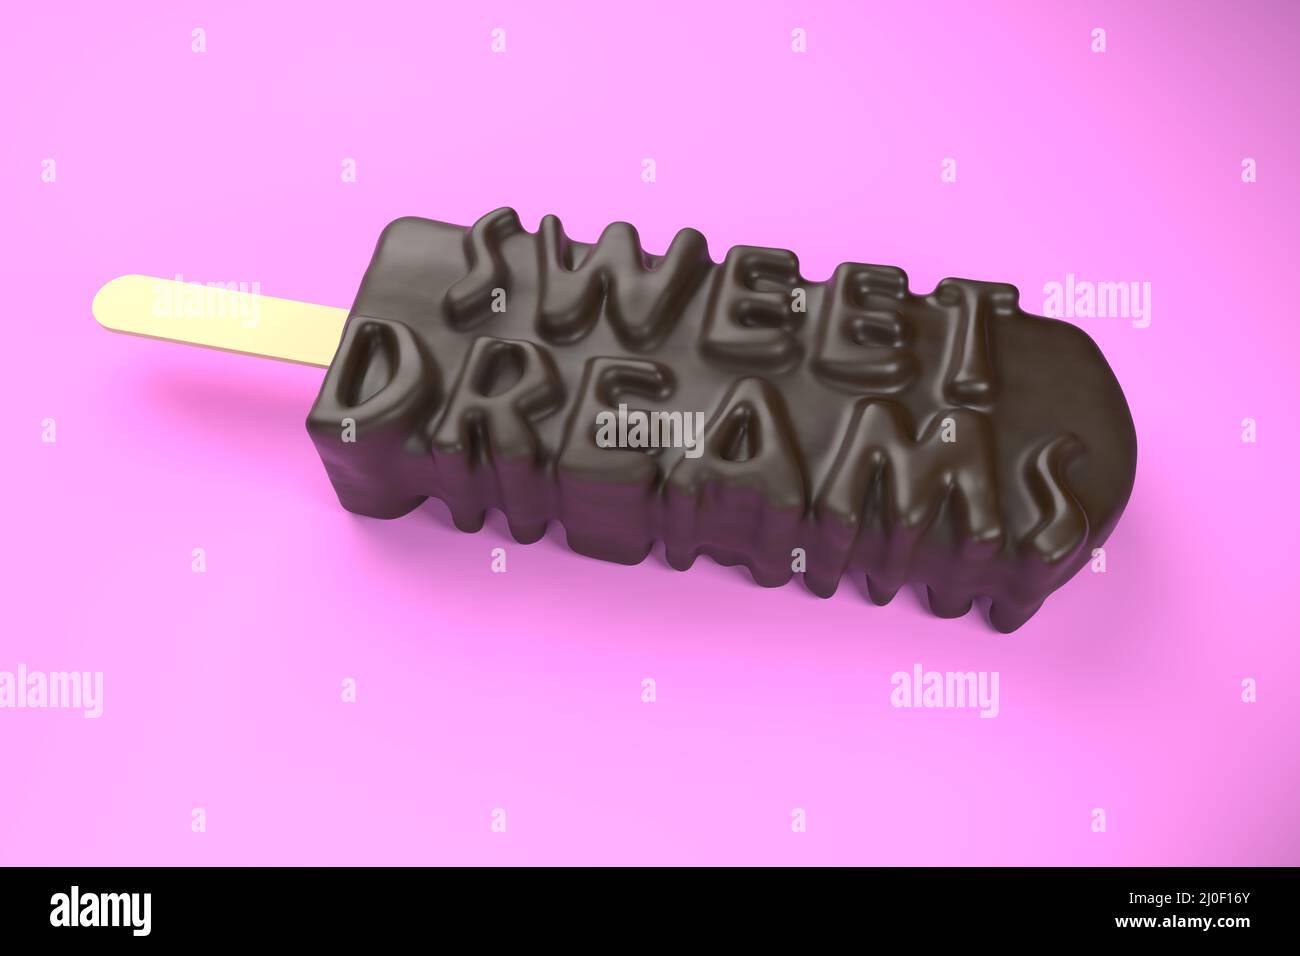 Testo Sweet Dreams sul classico gelato al cioccolato isolato sopra immagine 3d su sfondo rosa Foto Stock